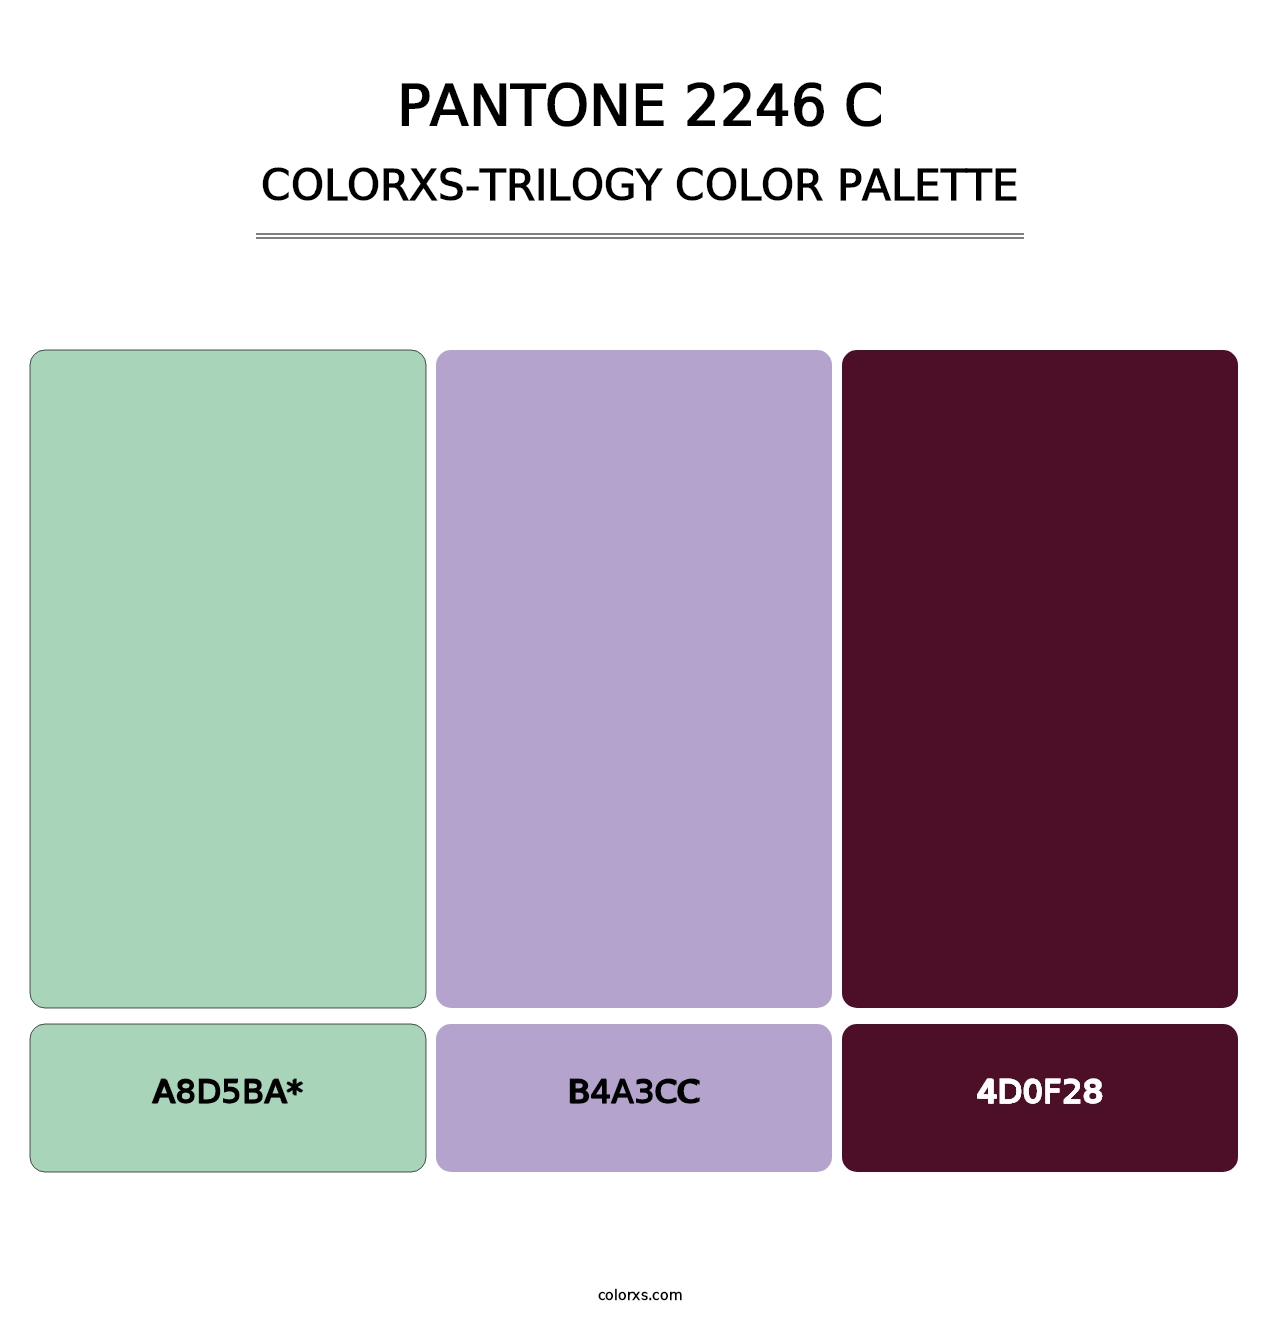 PANTONE 2246 C - Colorxs Trilogy Palette